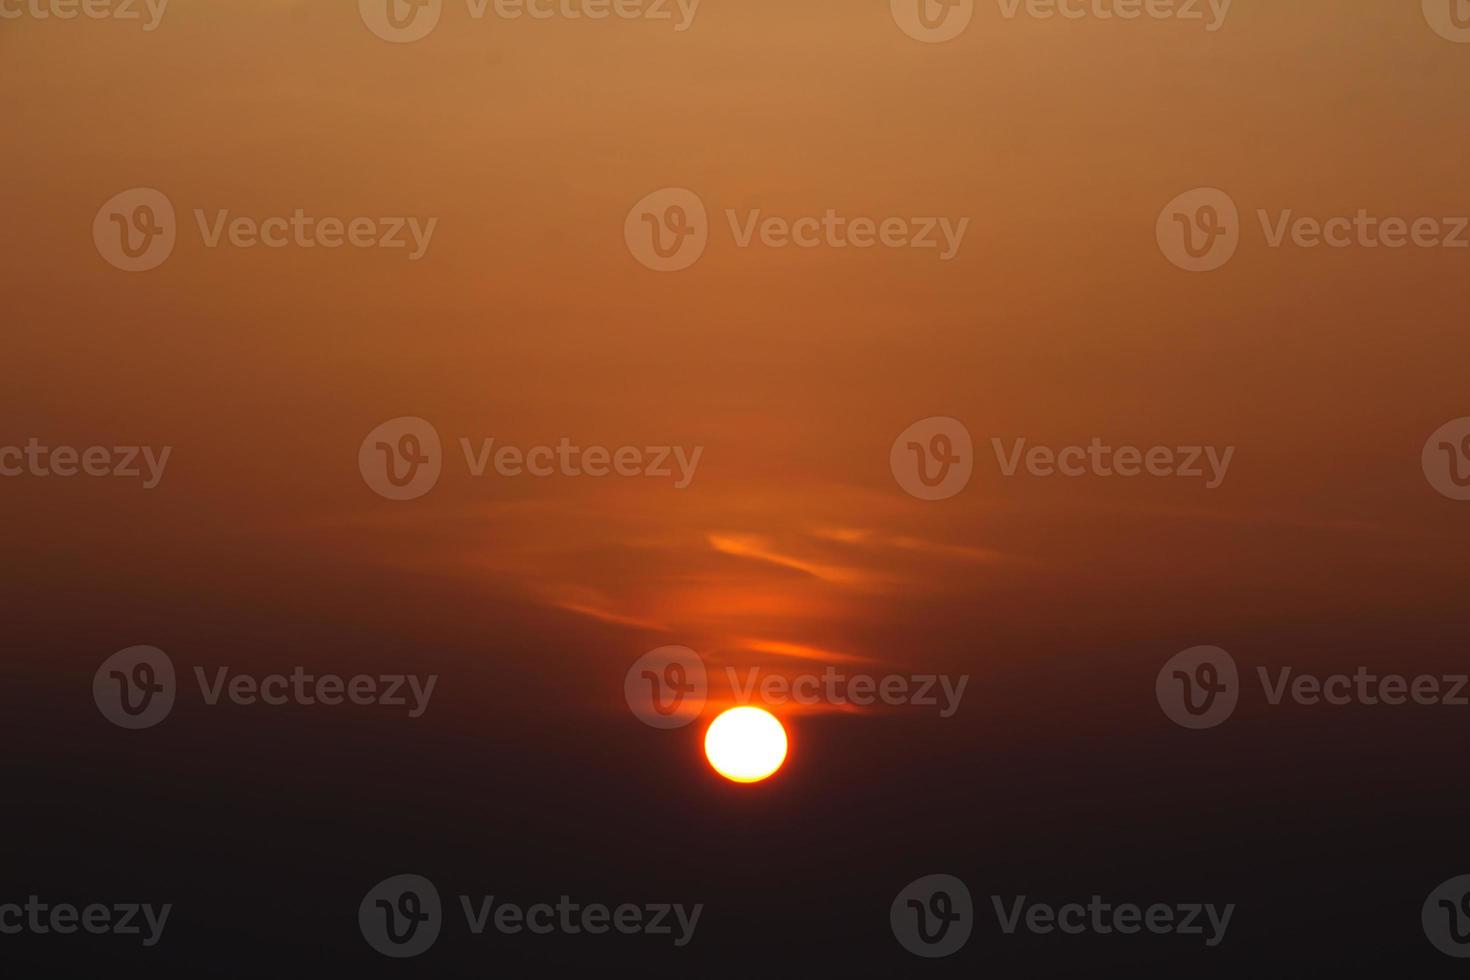 Point de vue du lever du soleil sur la montagne du chou, pho tab berg, thaïlande photo